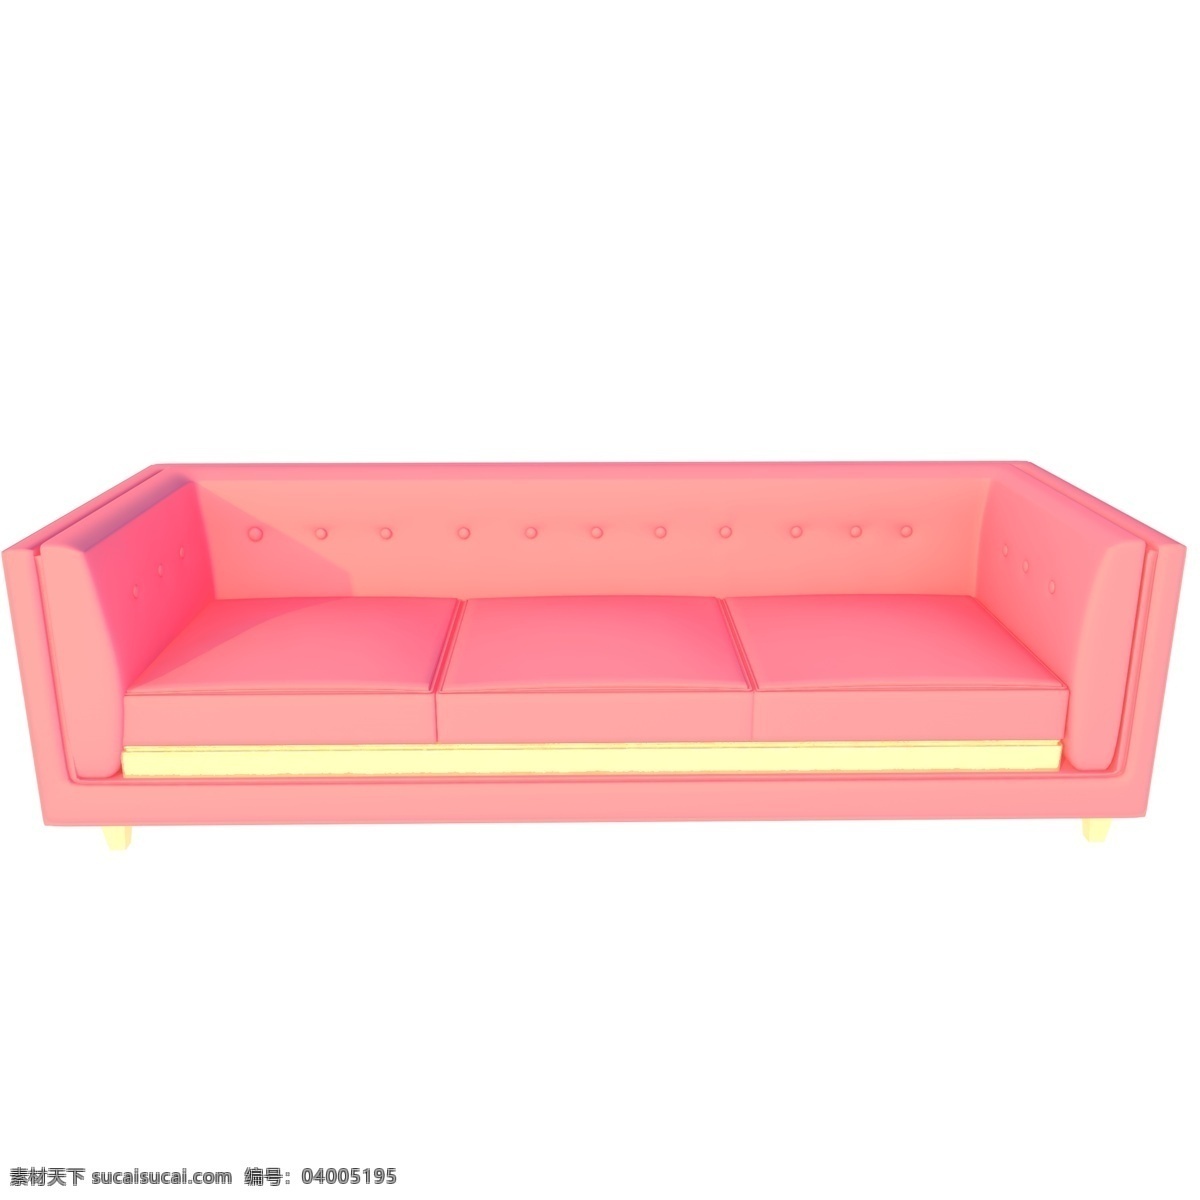 粉色时尚沙发 家具 沙发 三座 粉色系